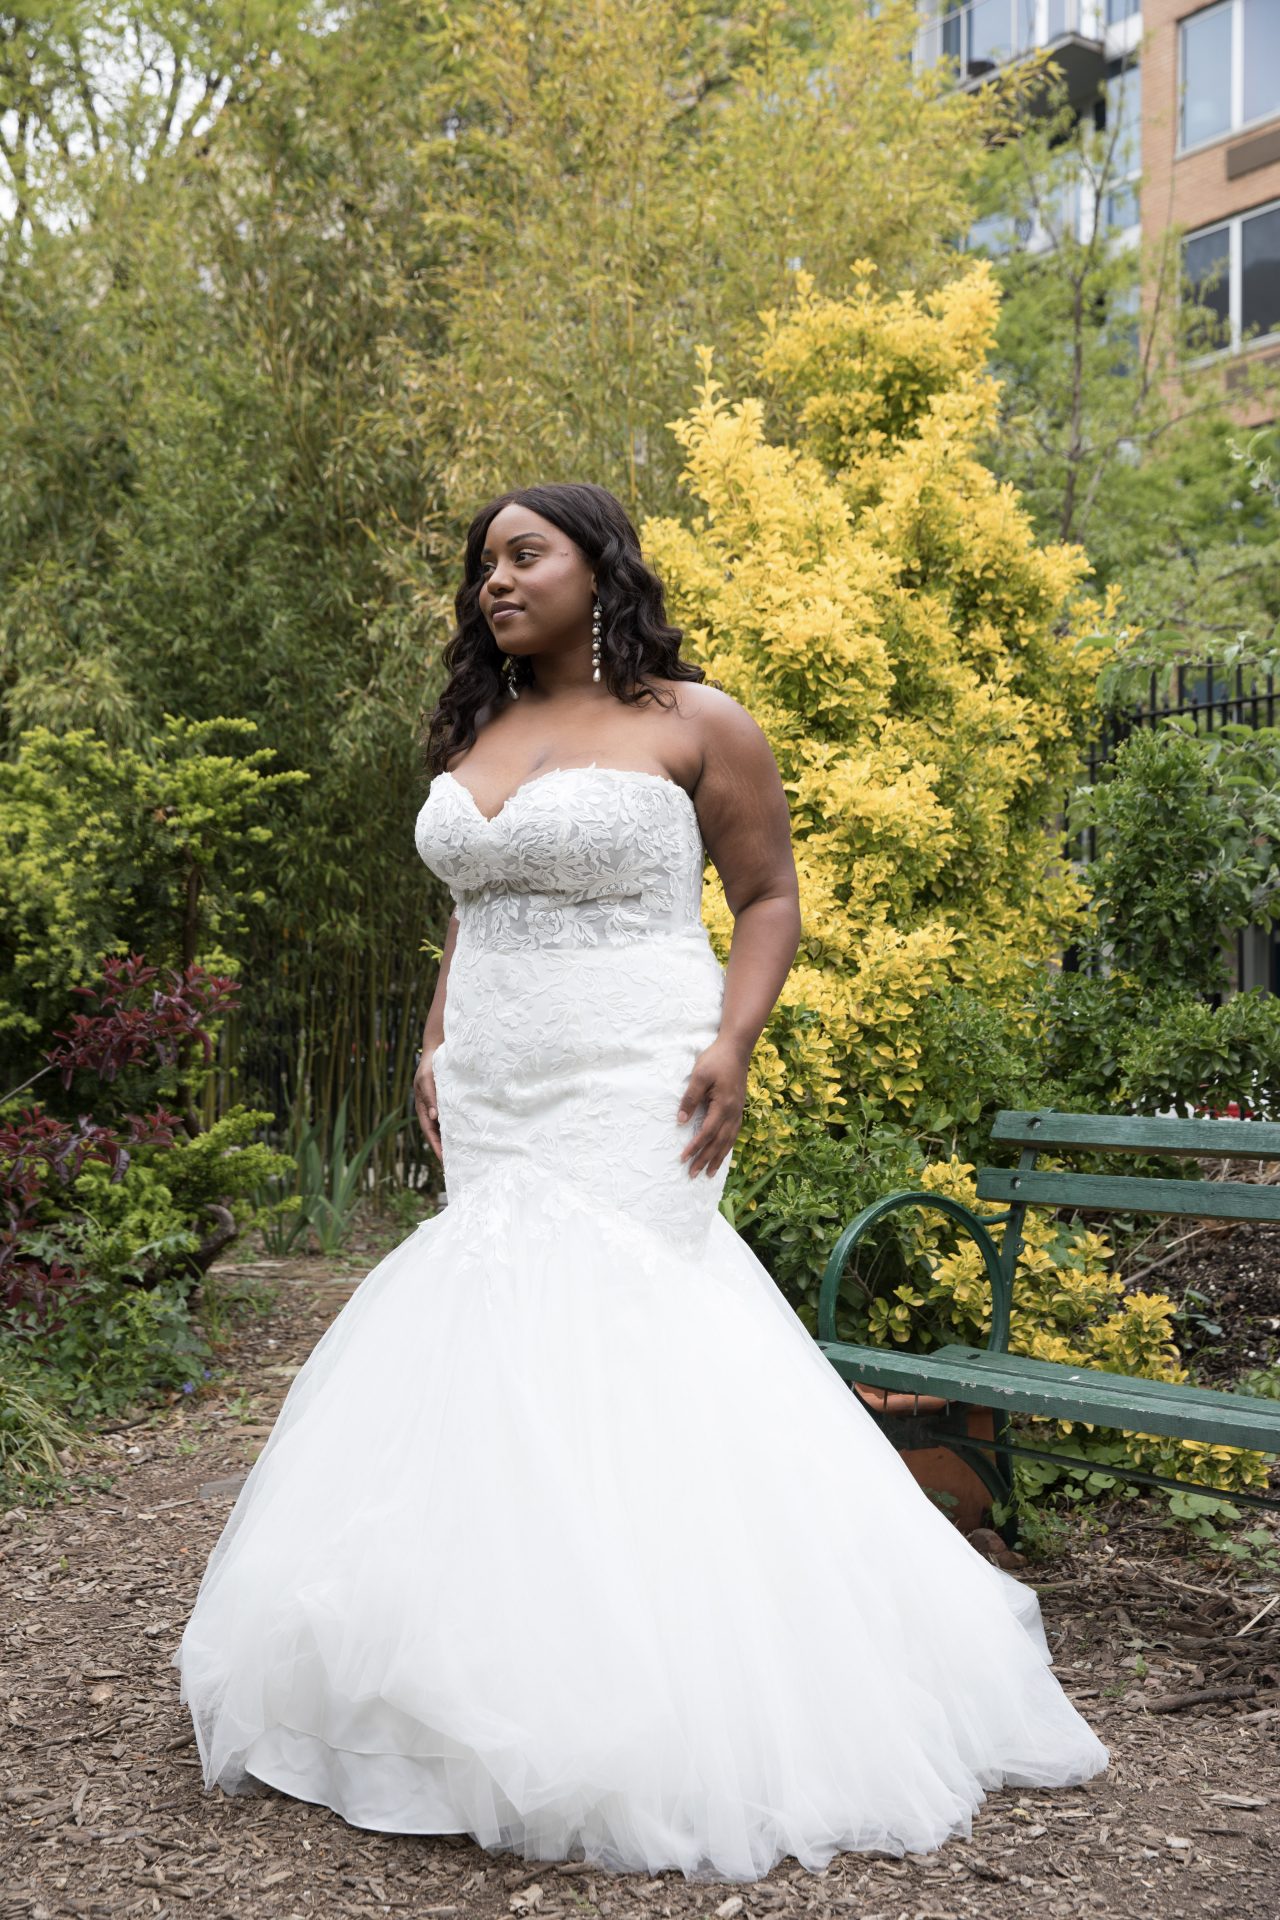 Våbenstilstand toksicitet erotisk Plus Size Wedding Gowns | GSB | Bridal Shop West Midlands